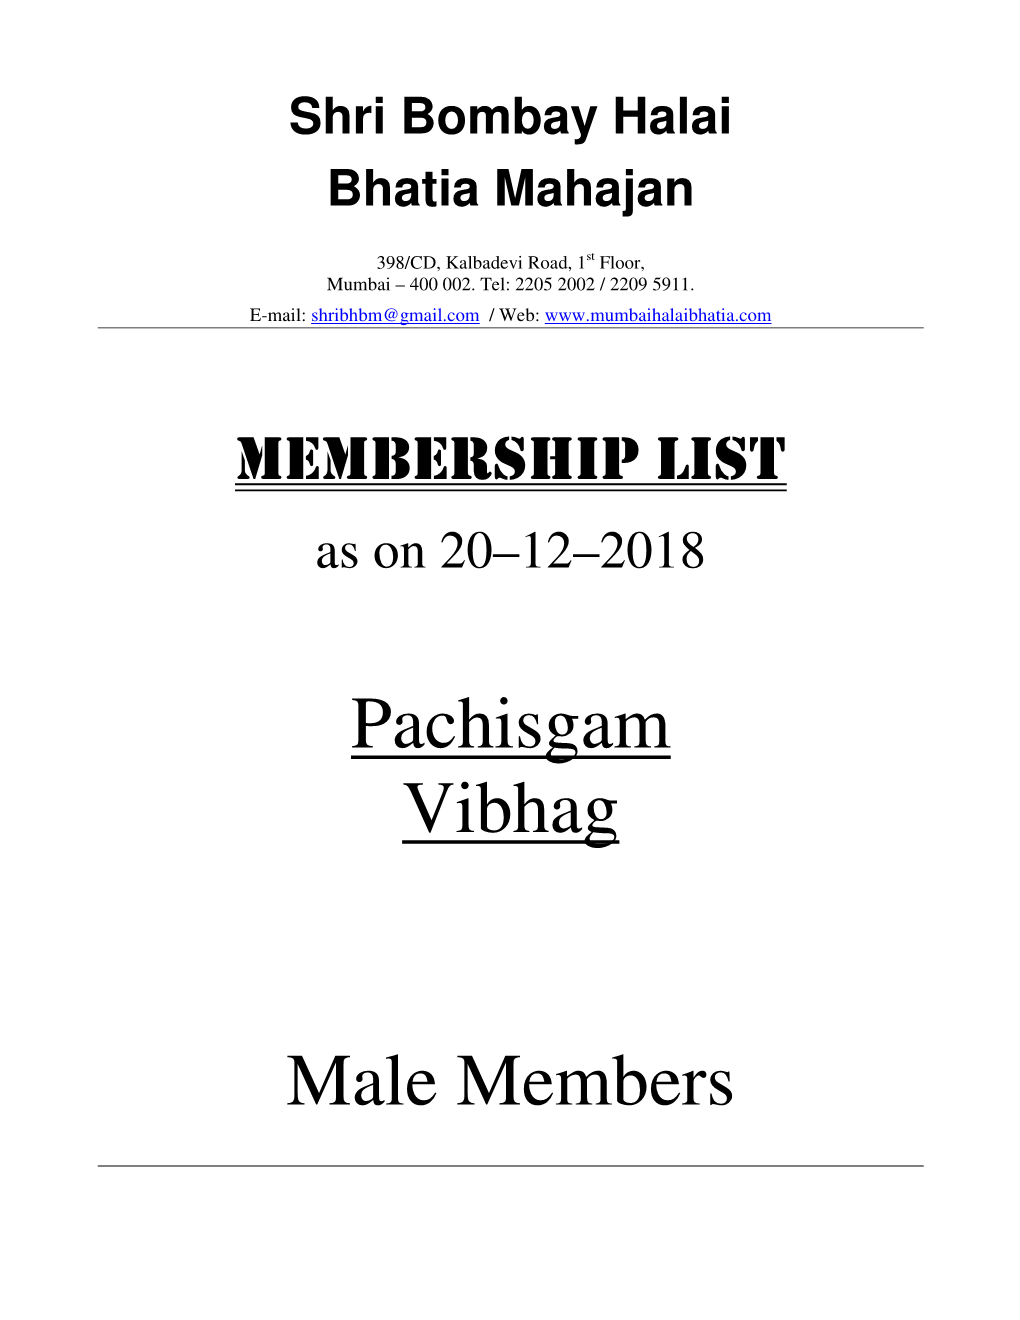 Pachisgam Vibhag Male Members